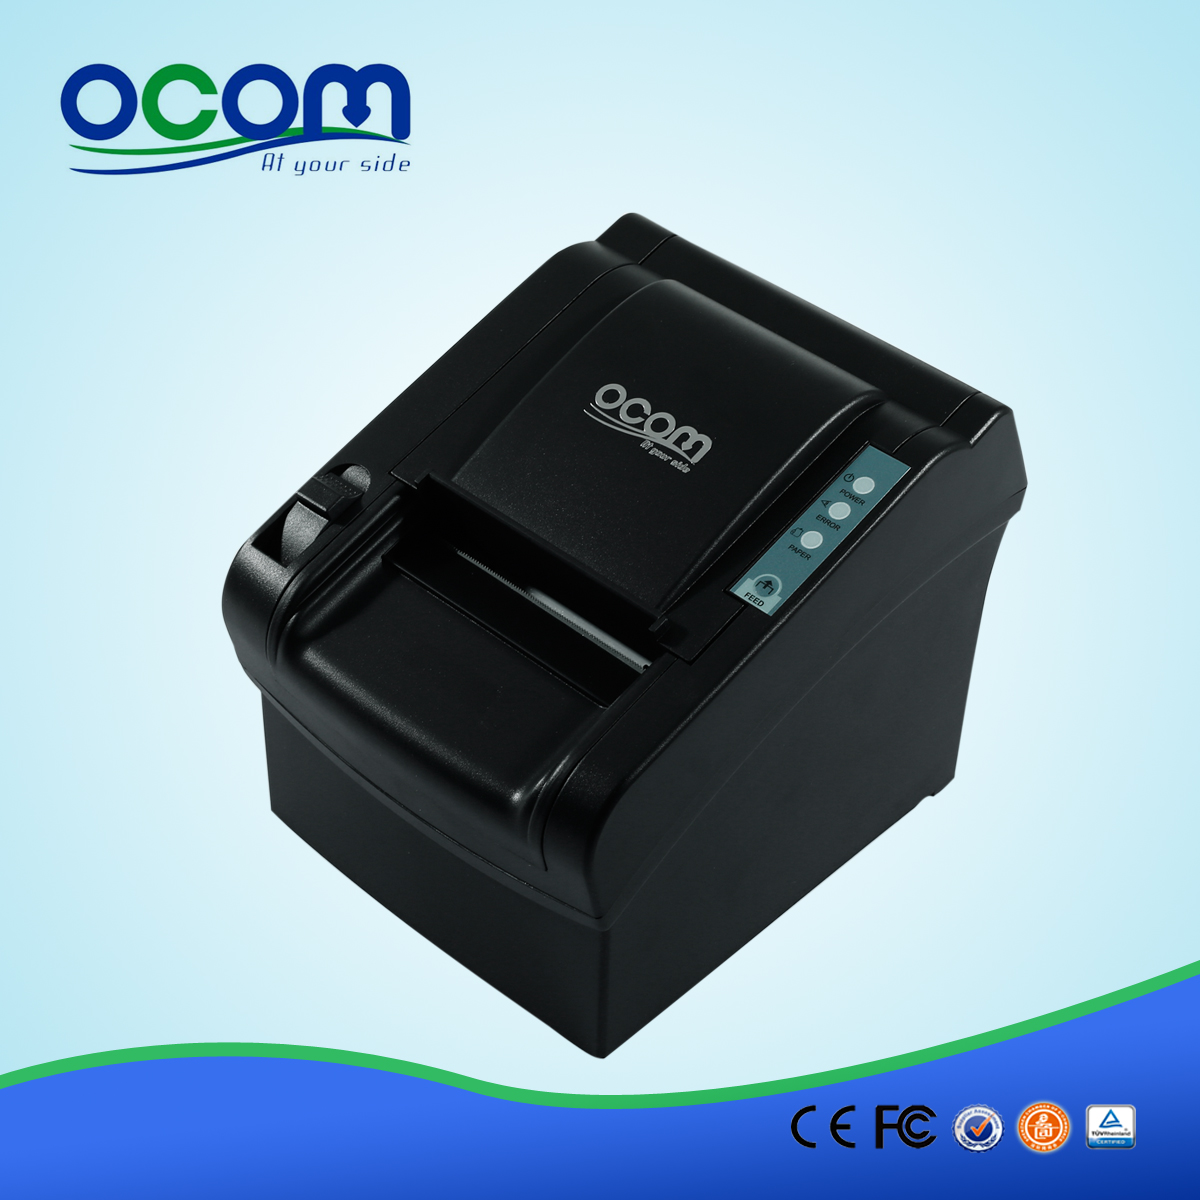 3 "Handschneider POS-Quittungsdrucker-OCPP-802